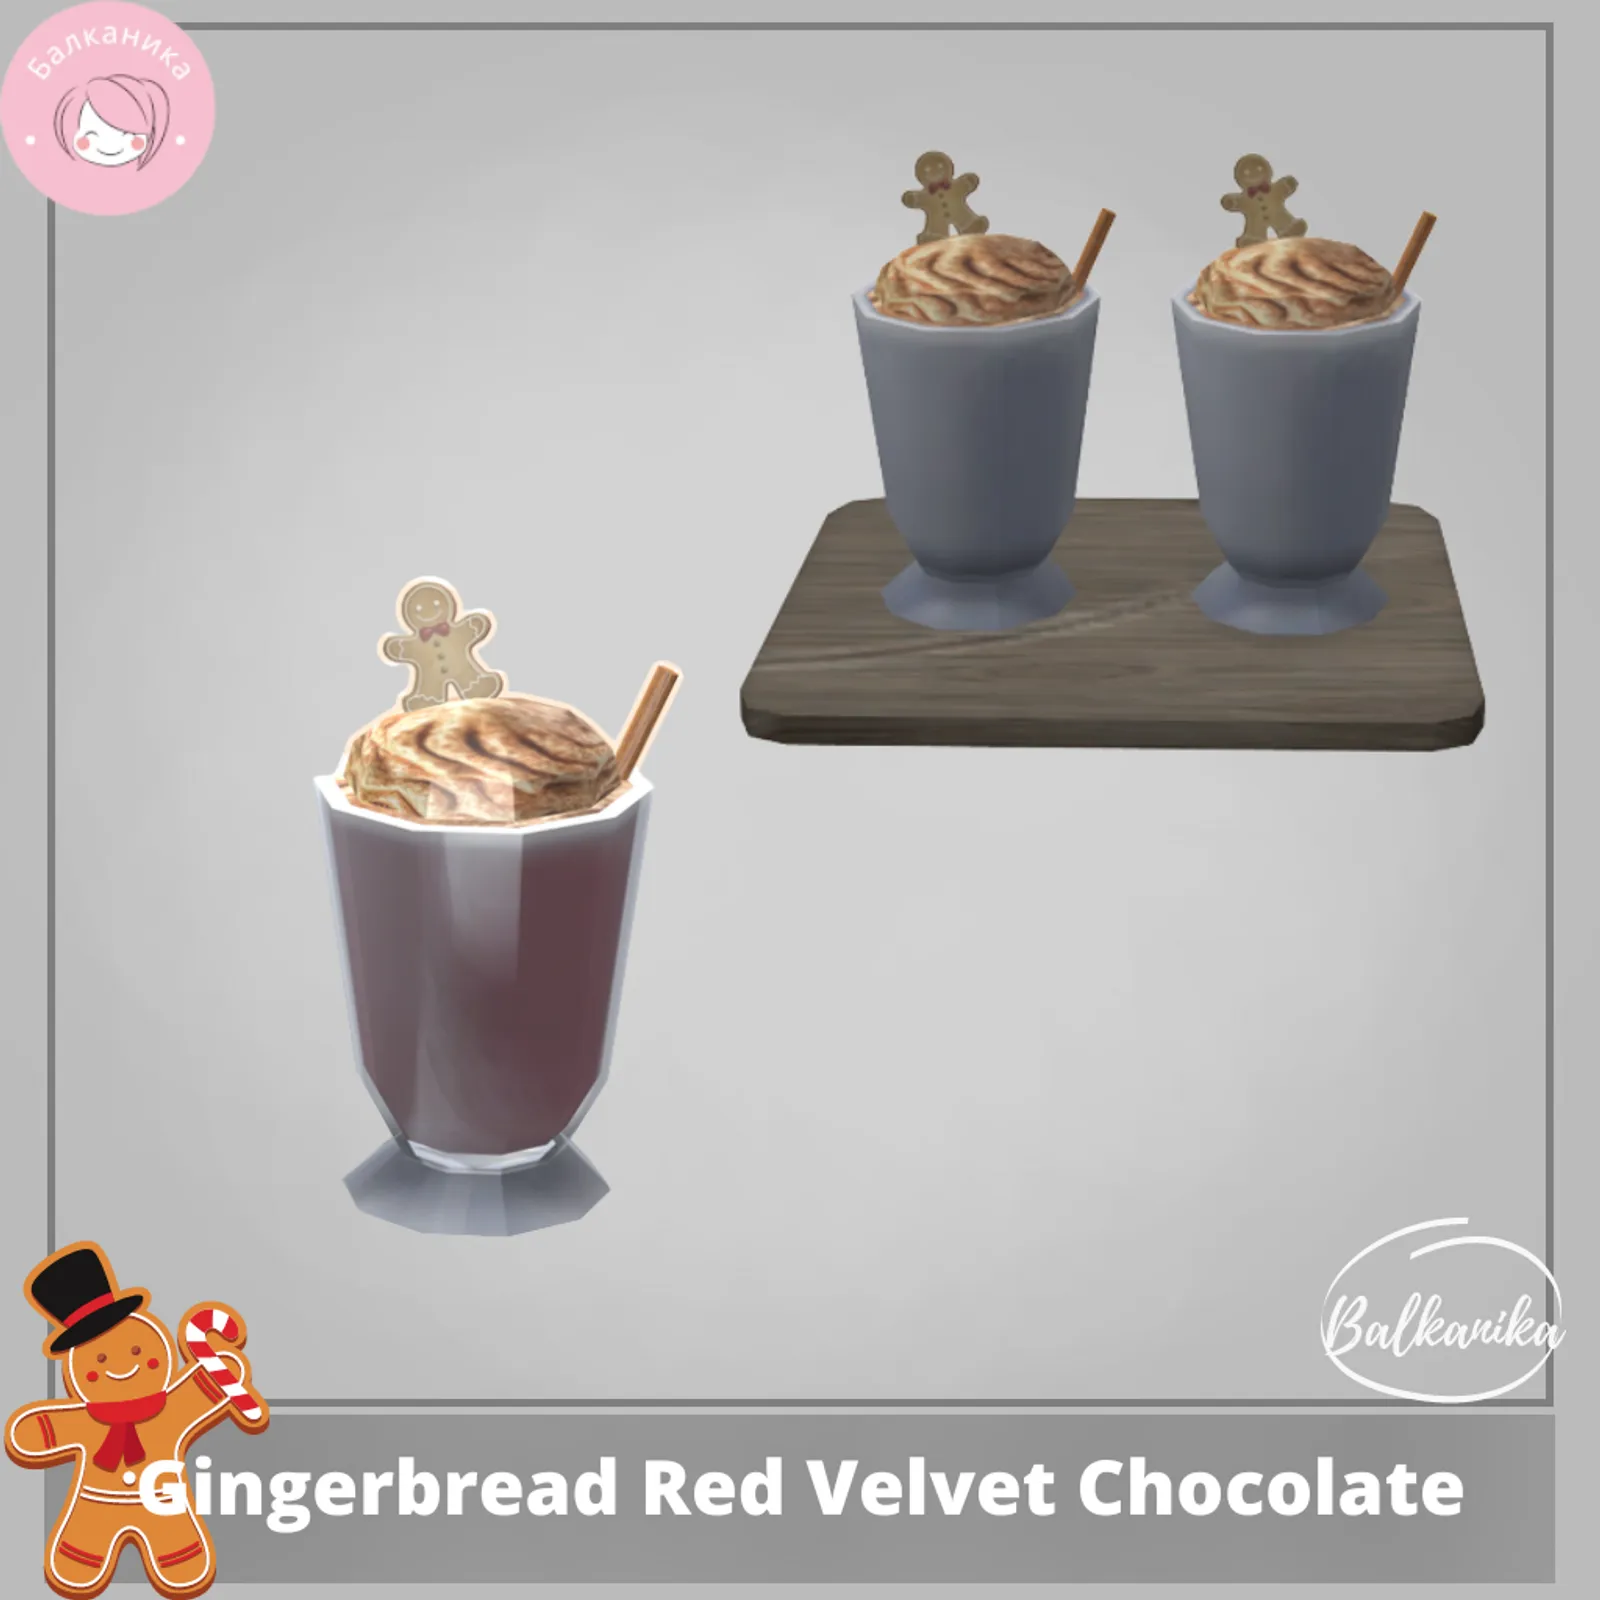 Gingerbread Red Velvet Chocolate